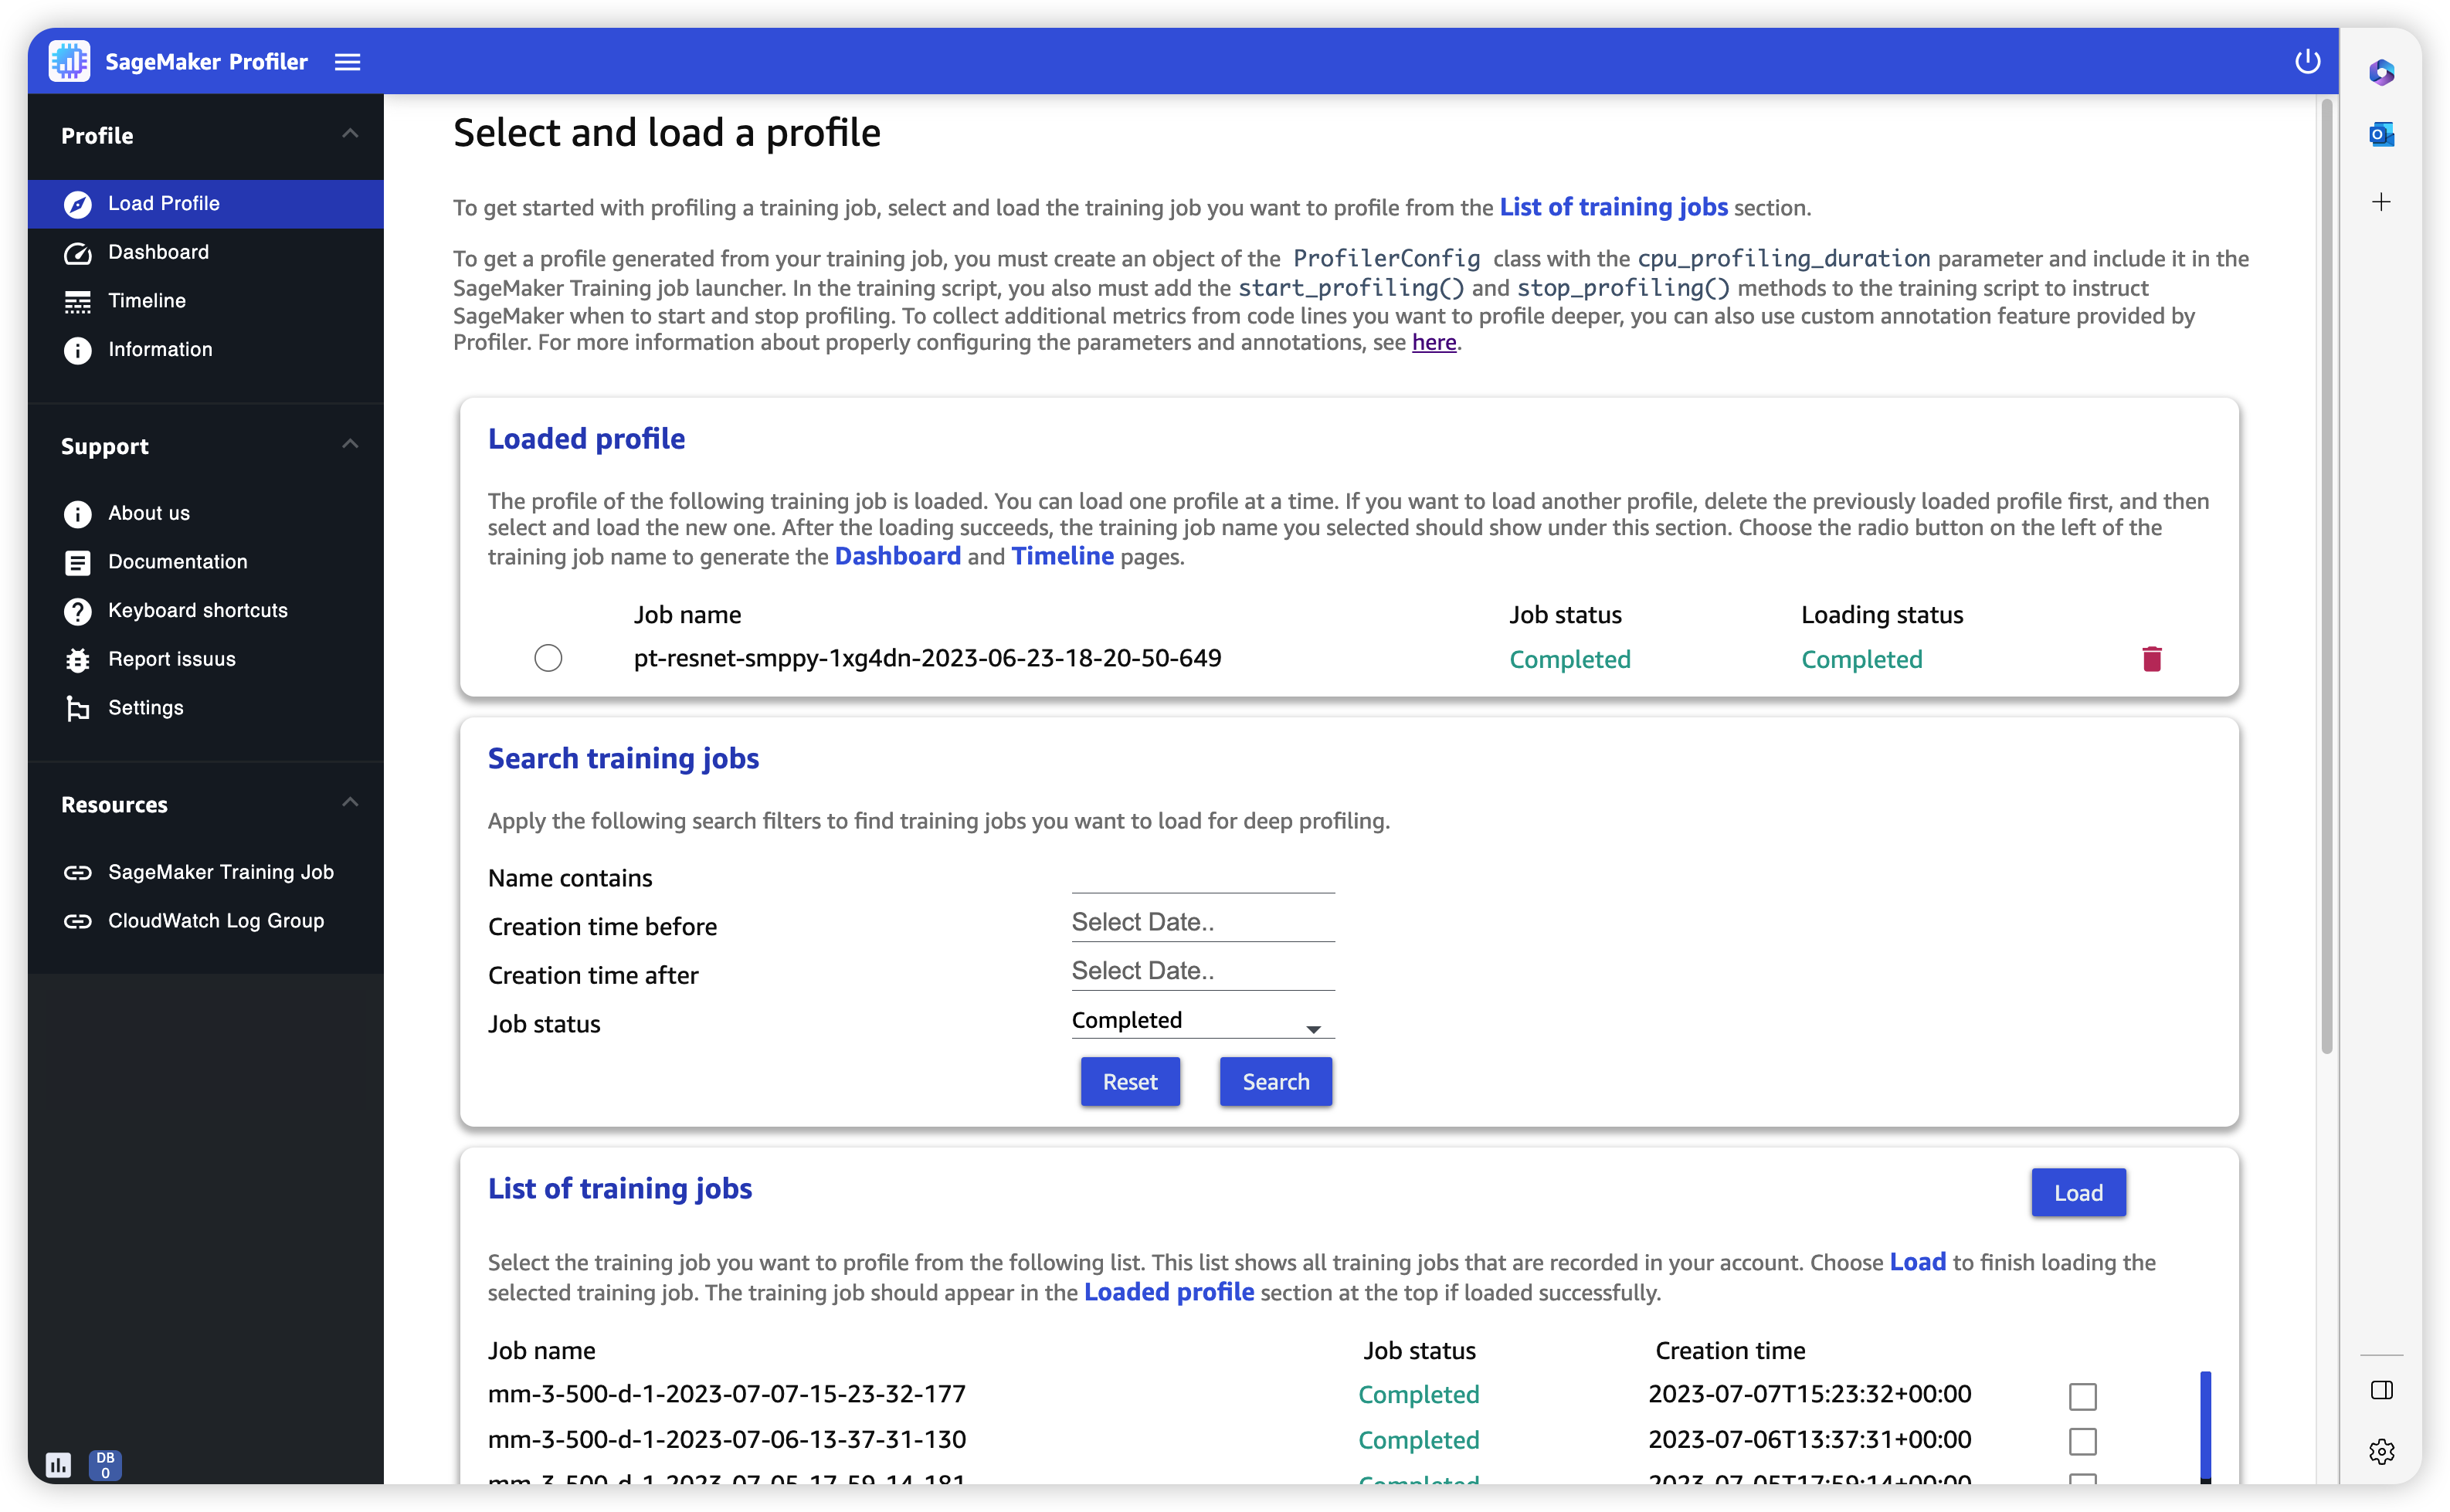 Capture d'écran de la page Charger le profil dans l'interface utilisateur du SageMaker profileur